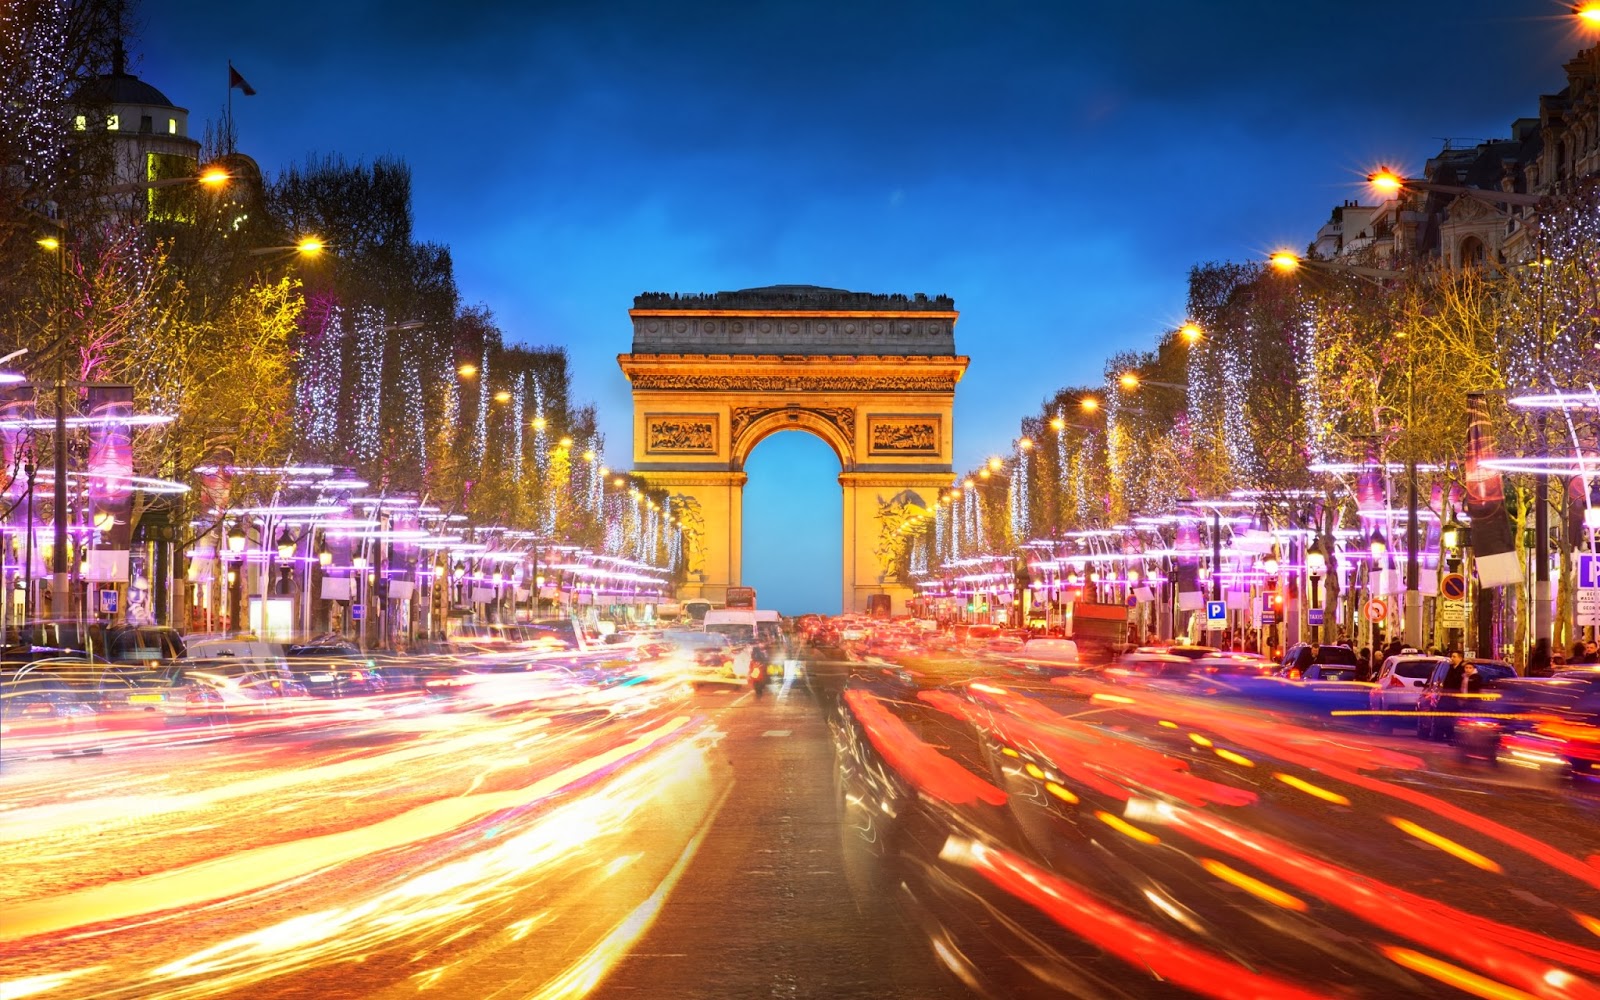 Fotos de El Arco de Triunfo de Paris francia